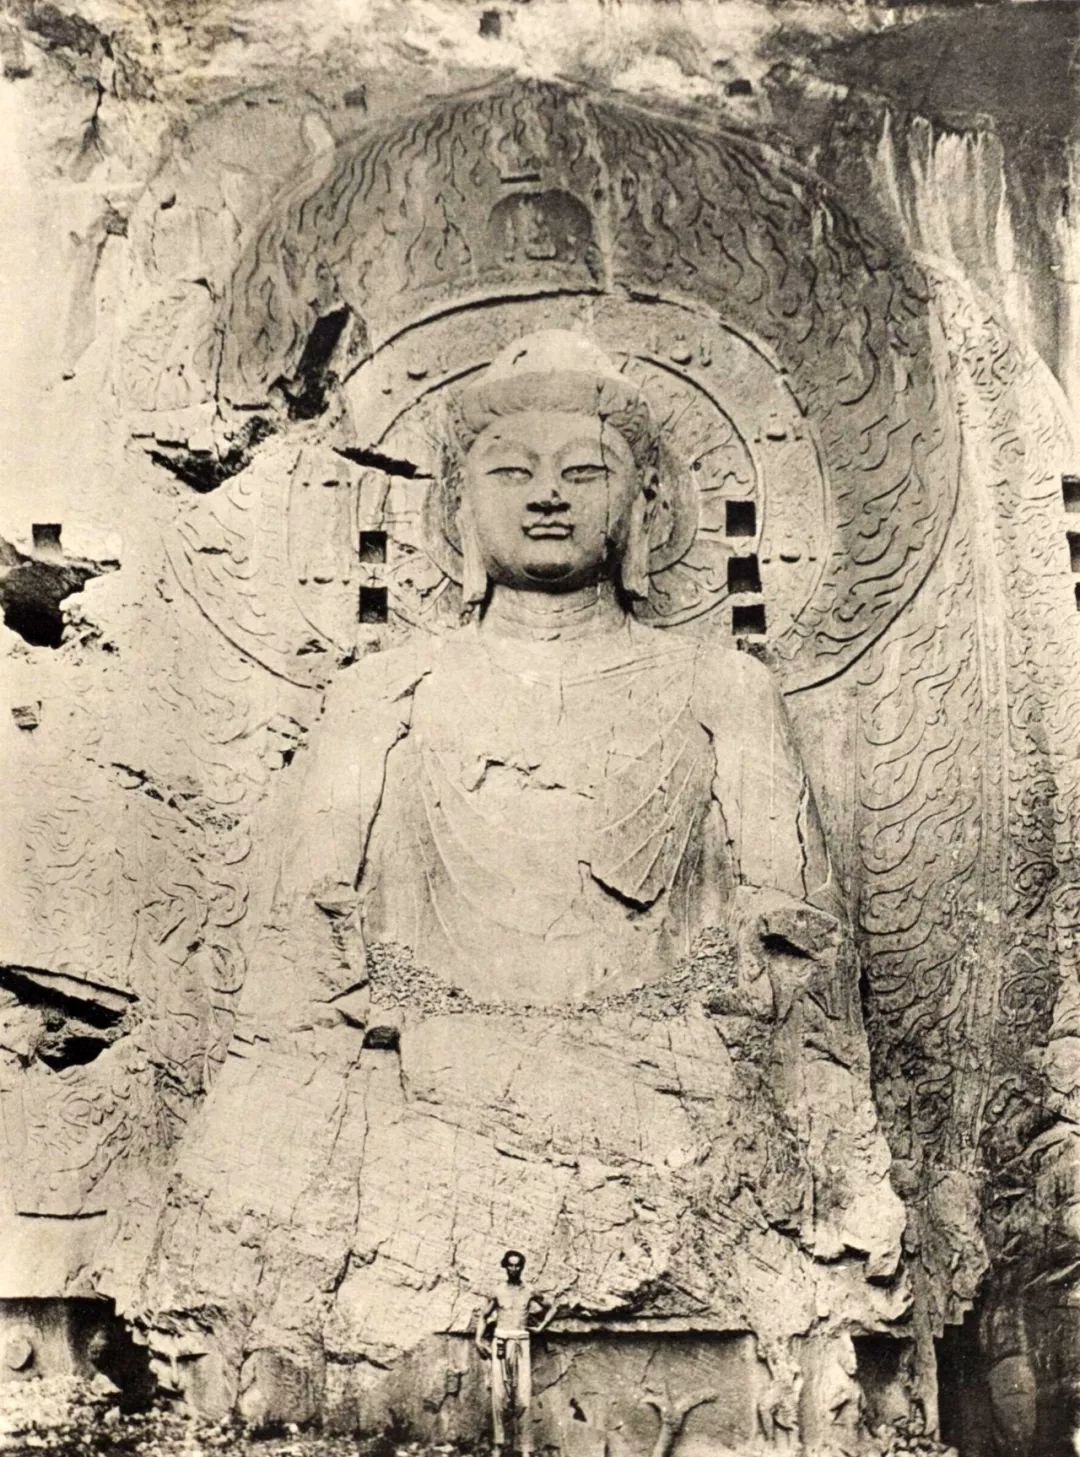 在研习中国雕塑者目中,洛阳南面十英里的龙门石窟当与云冈石窟同等